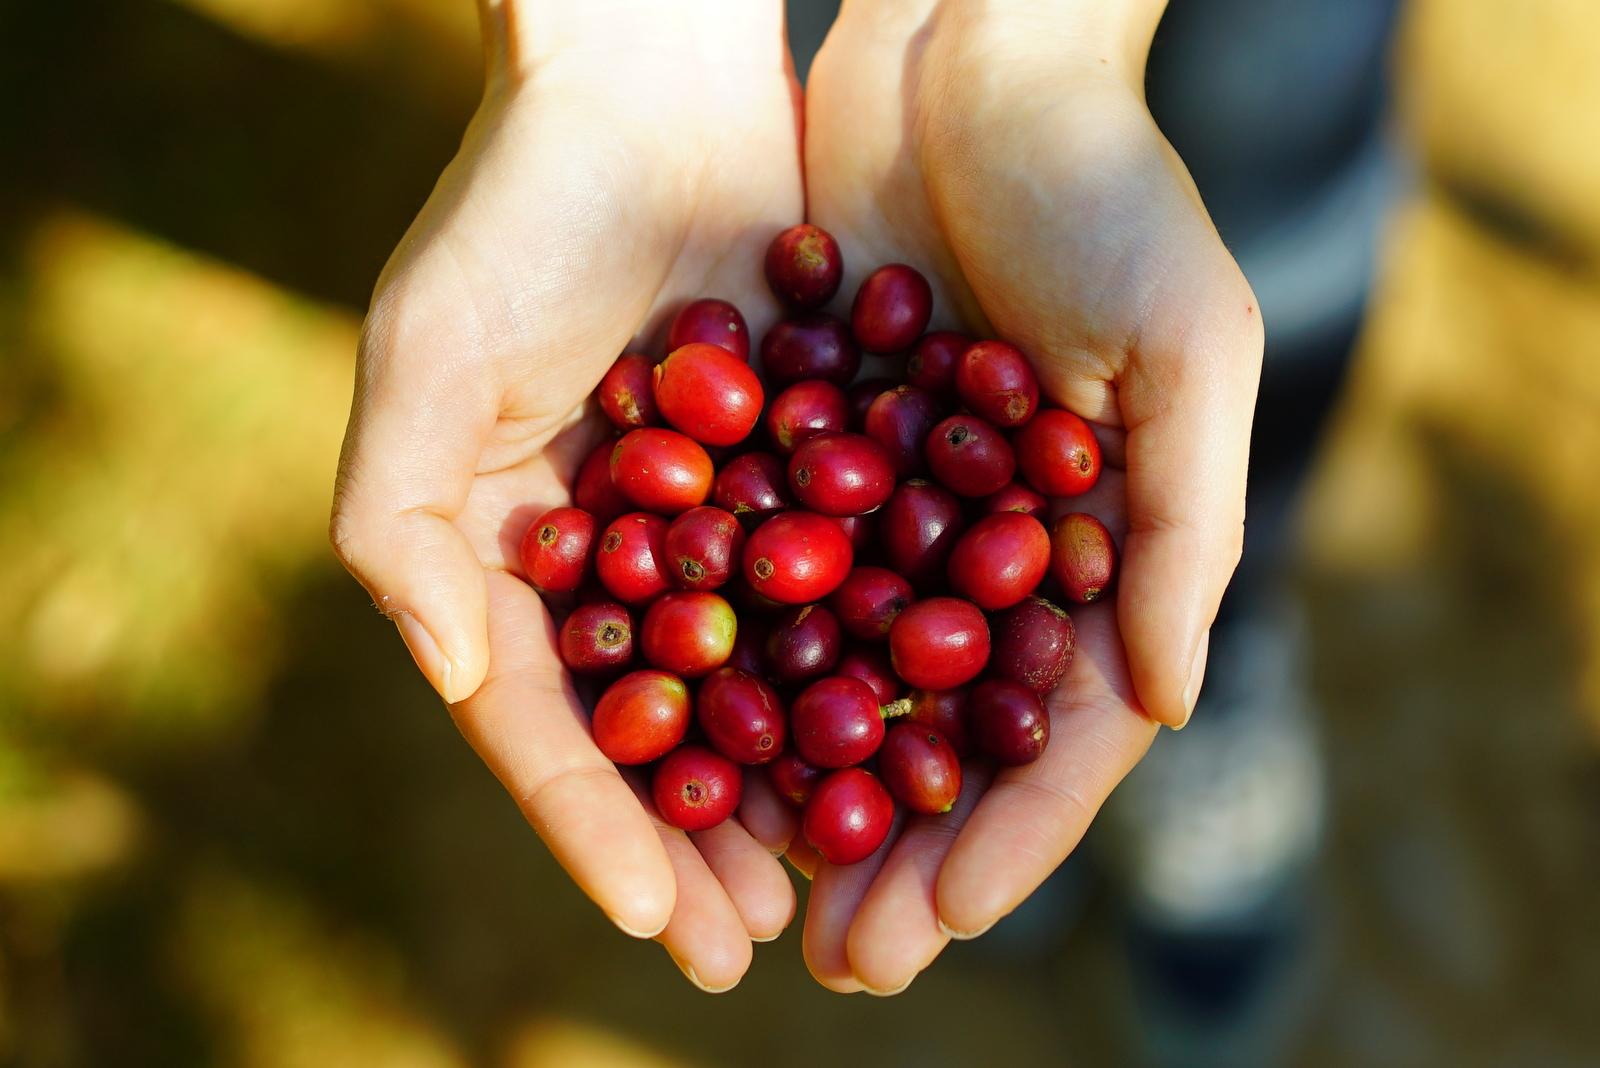 【お客様の健康を守りたい】<br>
コーヒー豆は農薬・化学肥料不使用のものを選びました